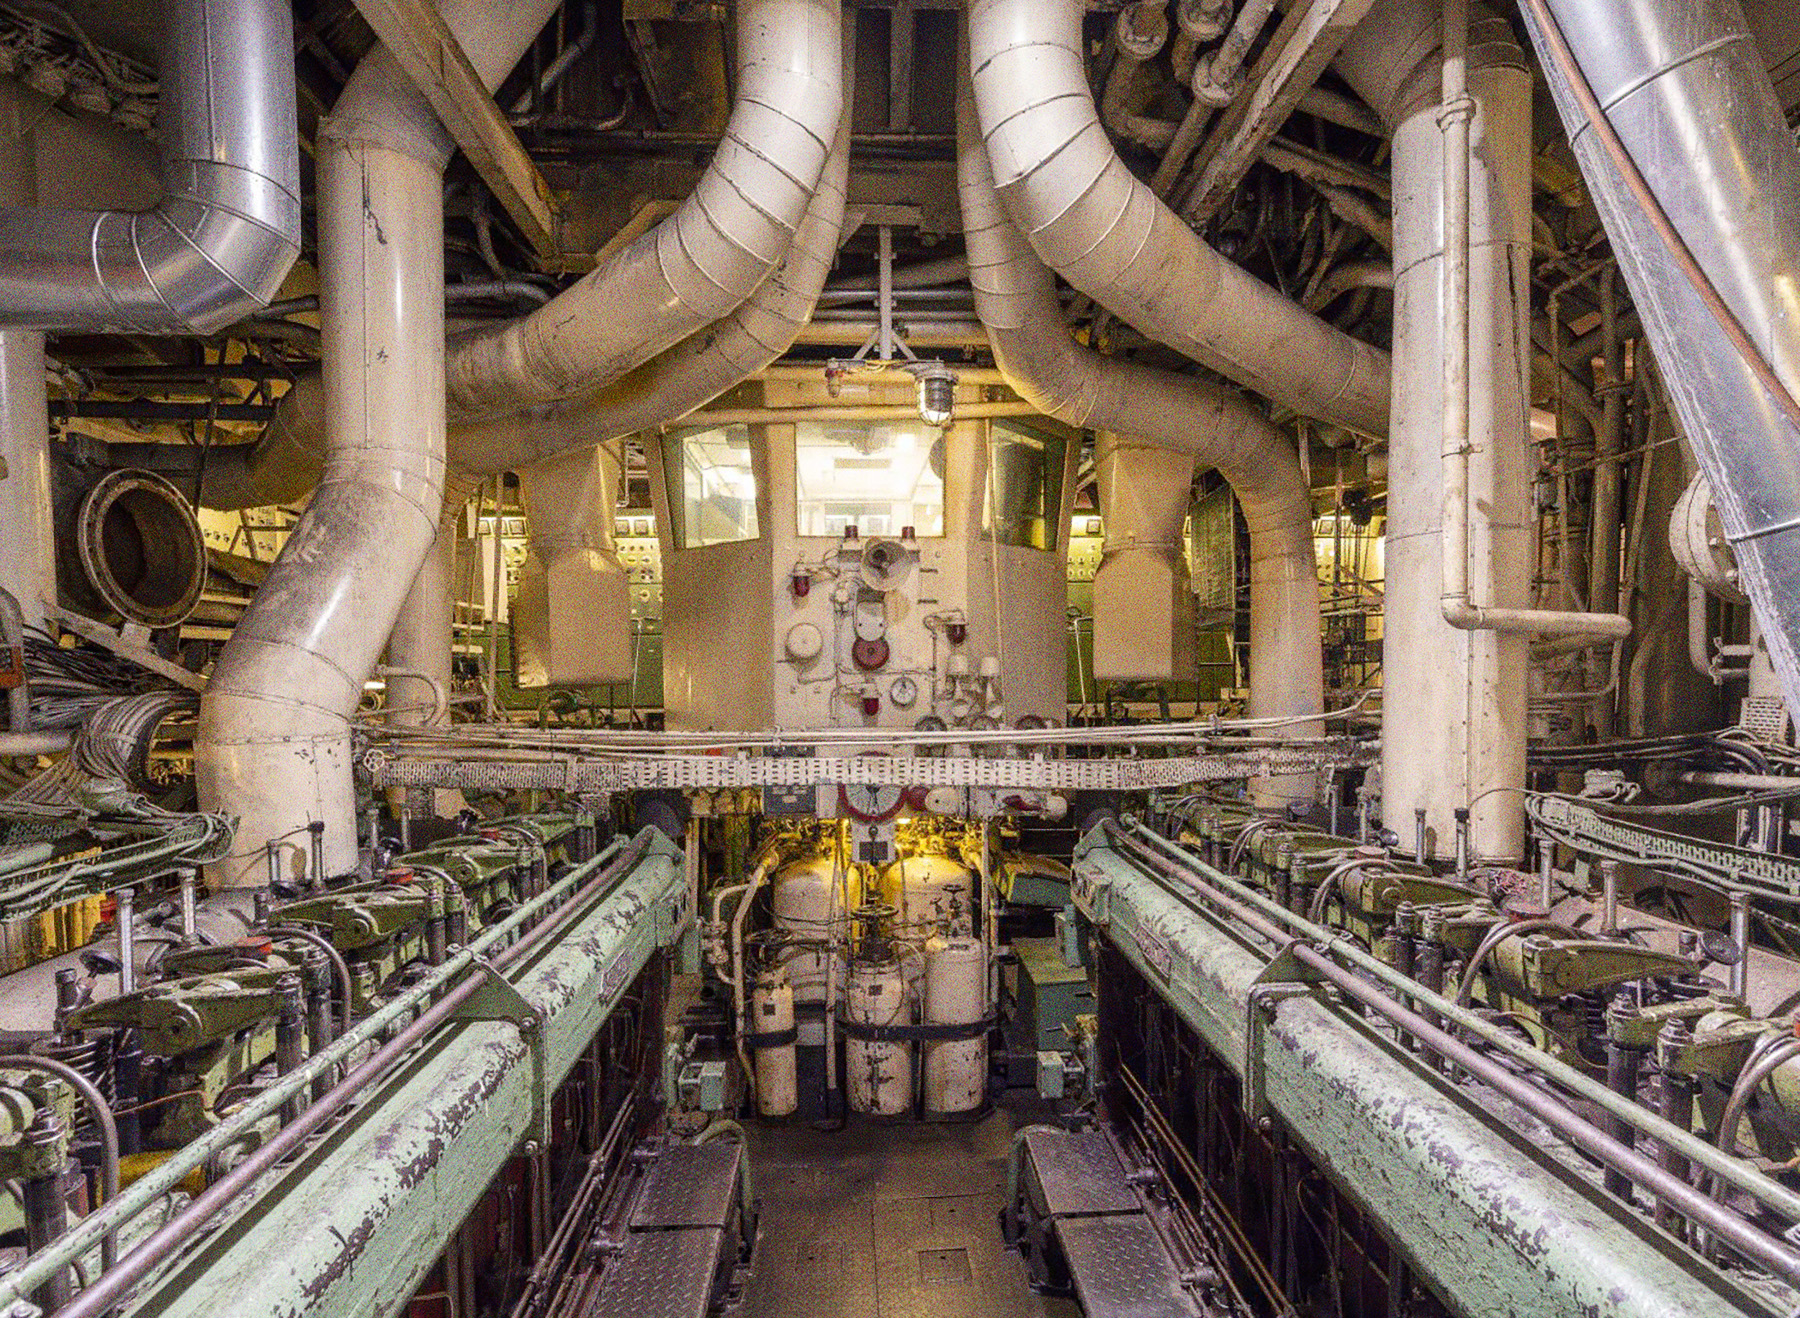 Der Maschinenraum der Stubnitz. Auf dem Bild sind mehrere Abgasrohre, Zylinderköpfe, Messeinrichtungen sowie der Leitstand zu sehen.